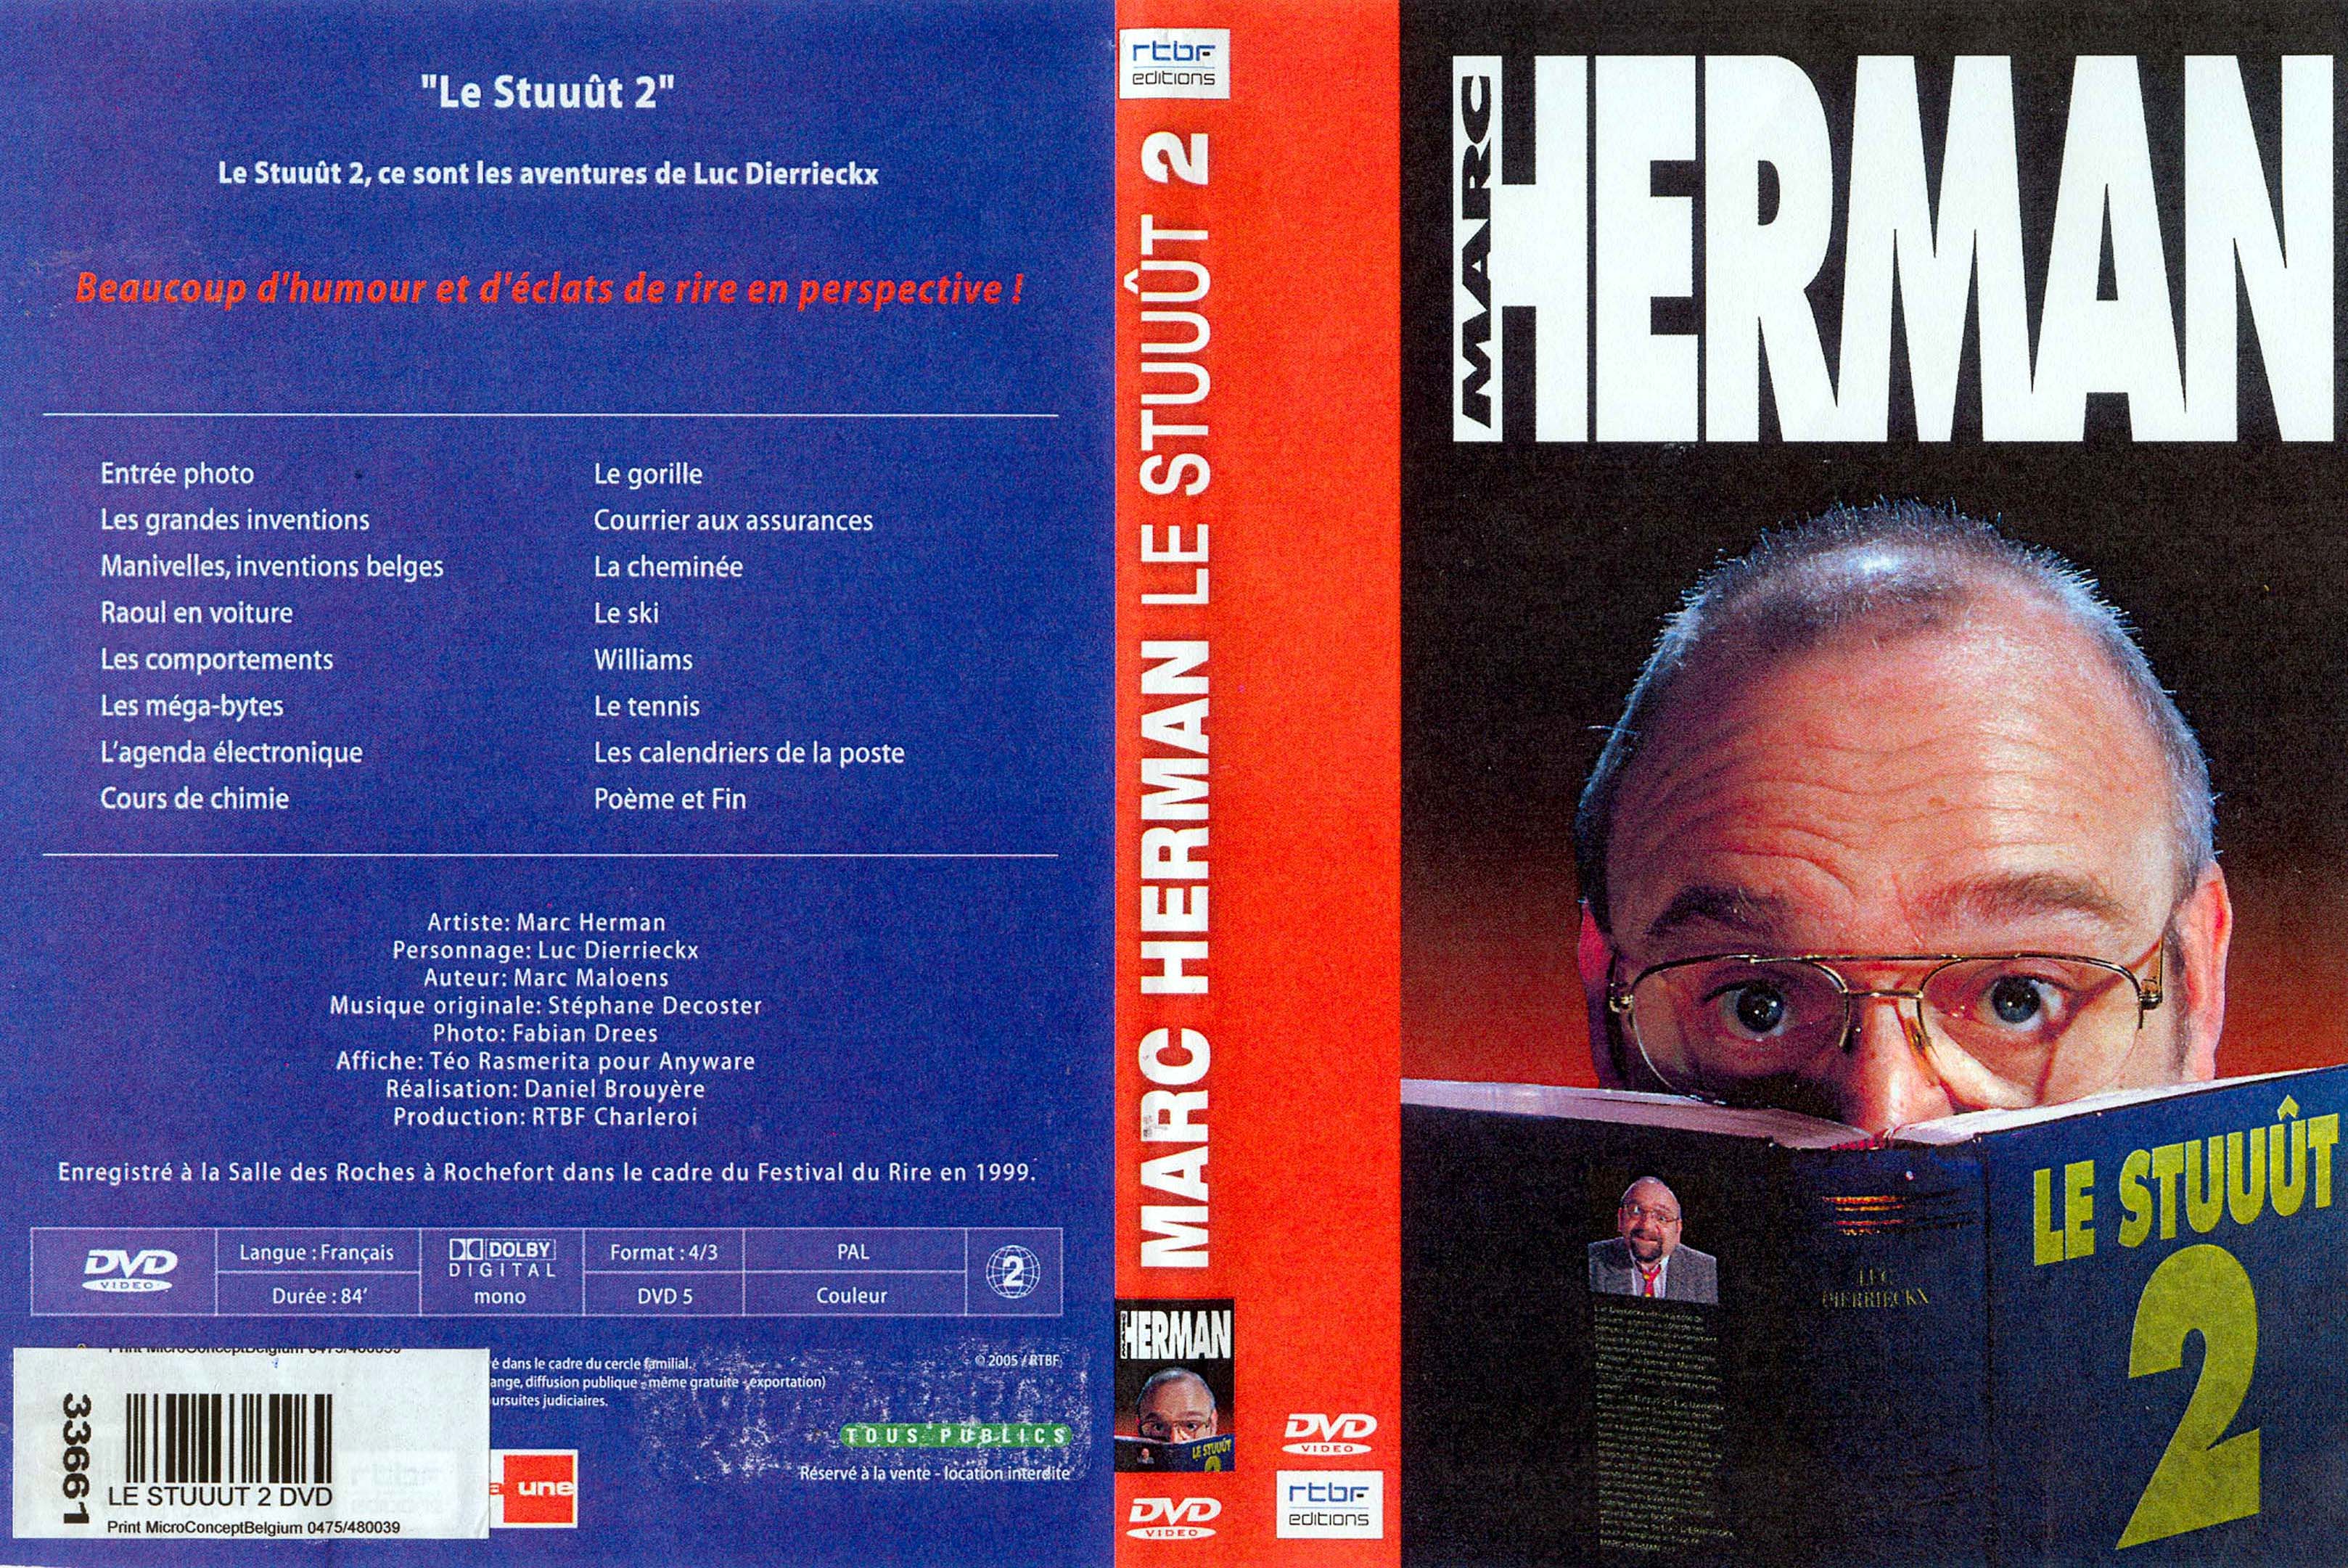 Jaquette DVD Marc Herman Le stuuut 2